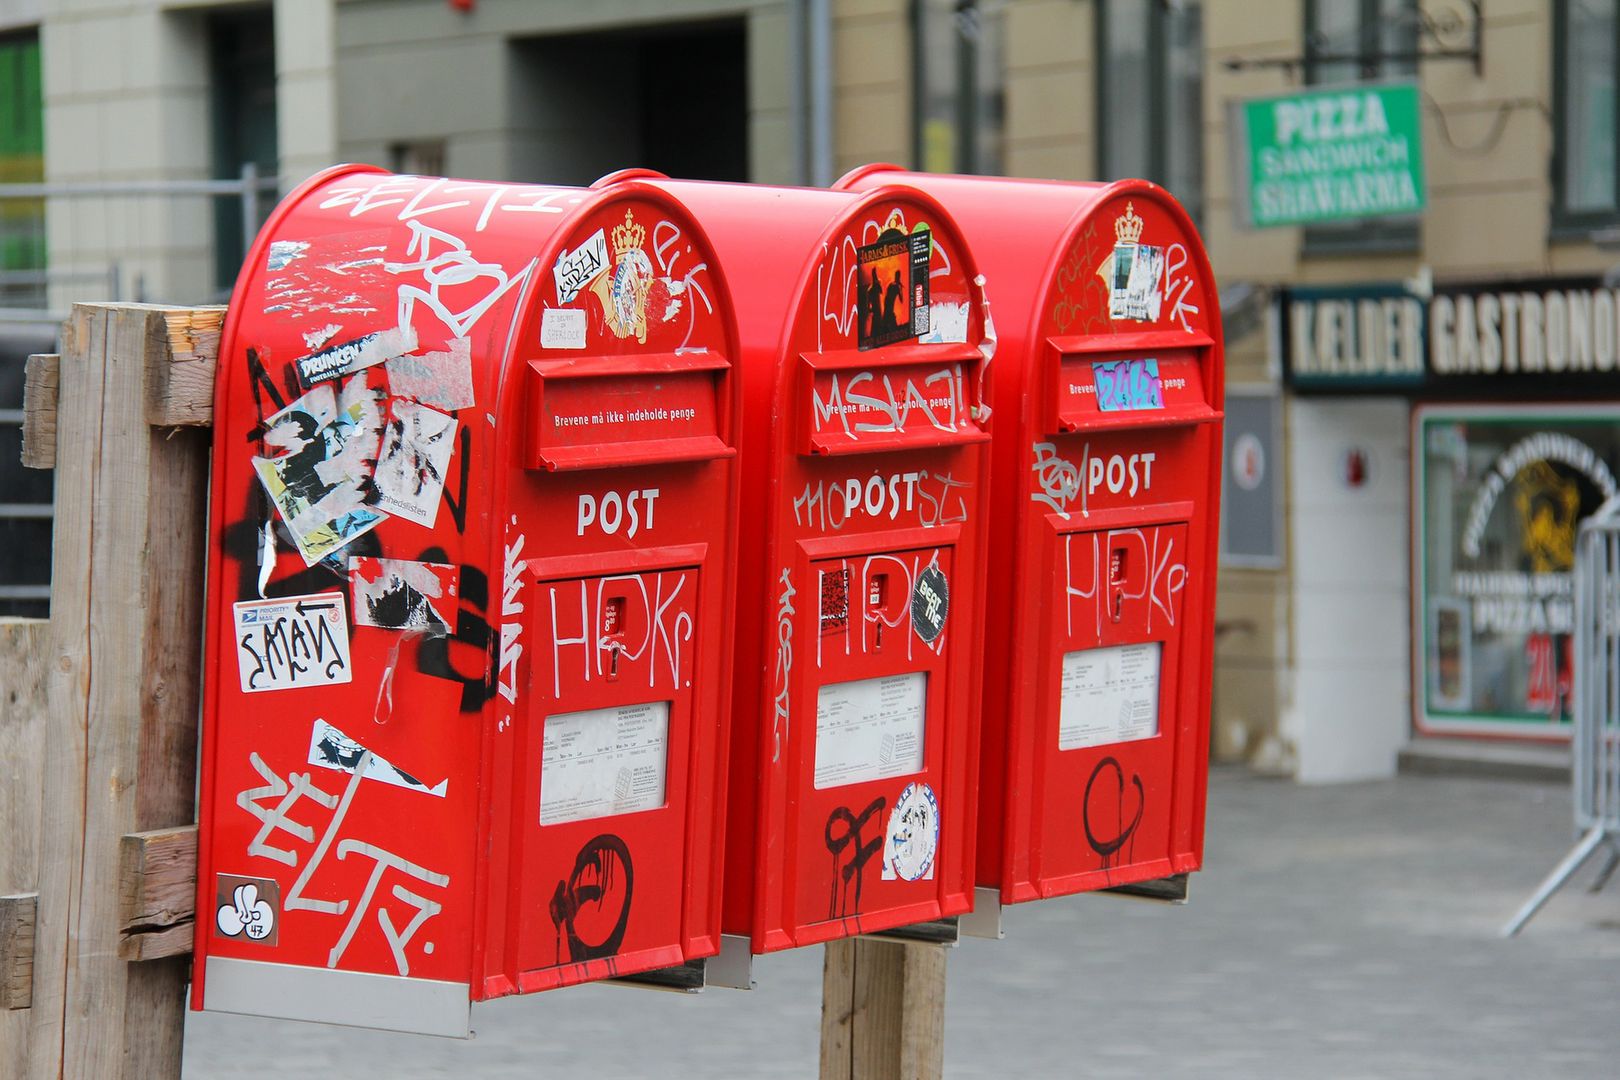 Narzekasz na polską pocztę? To zobacz, co oni robią z przesyłkami